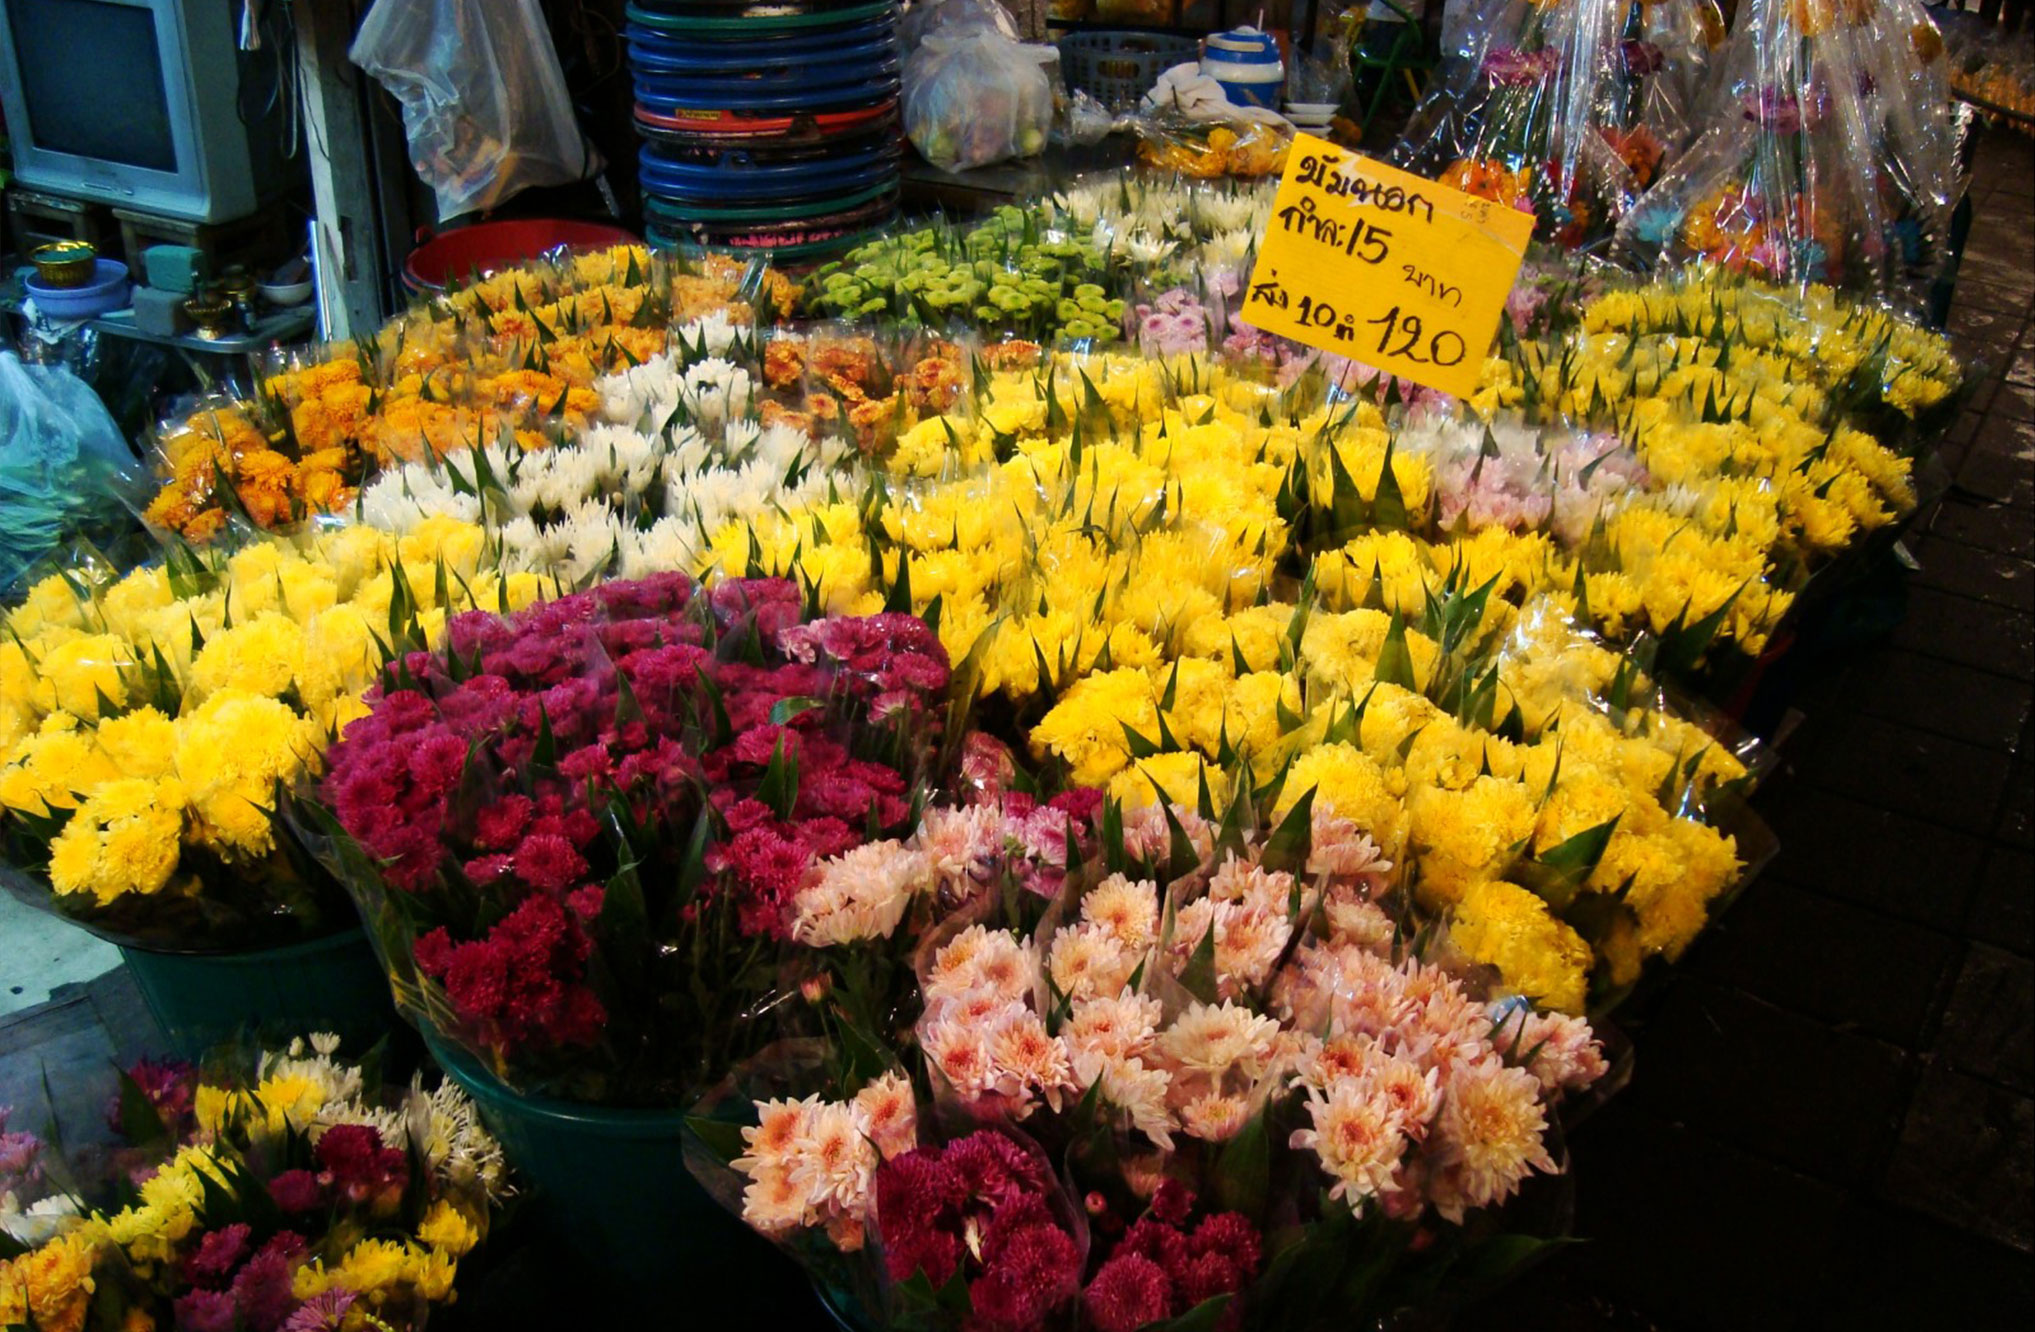 曼谷最大的花市